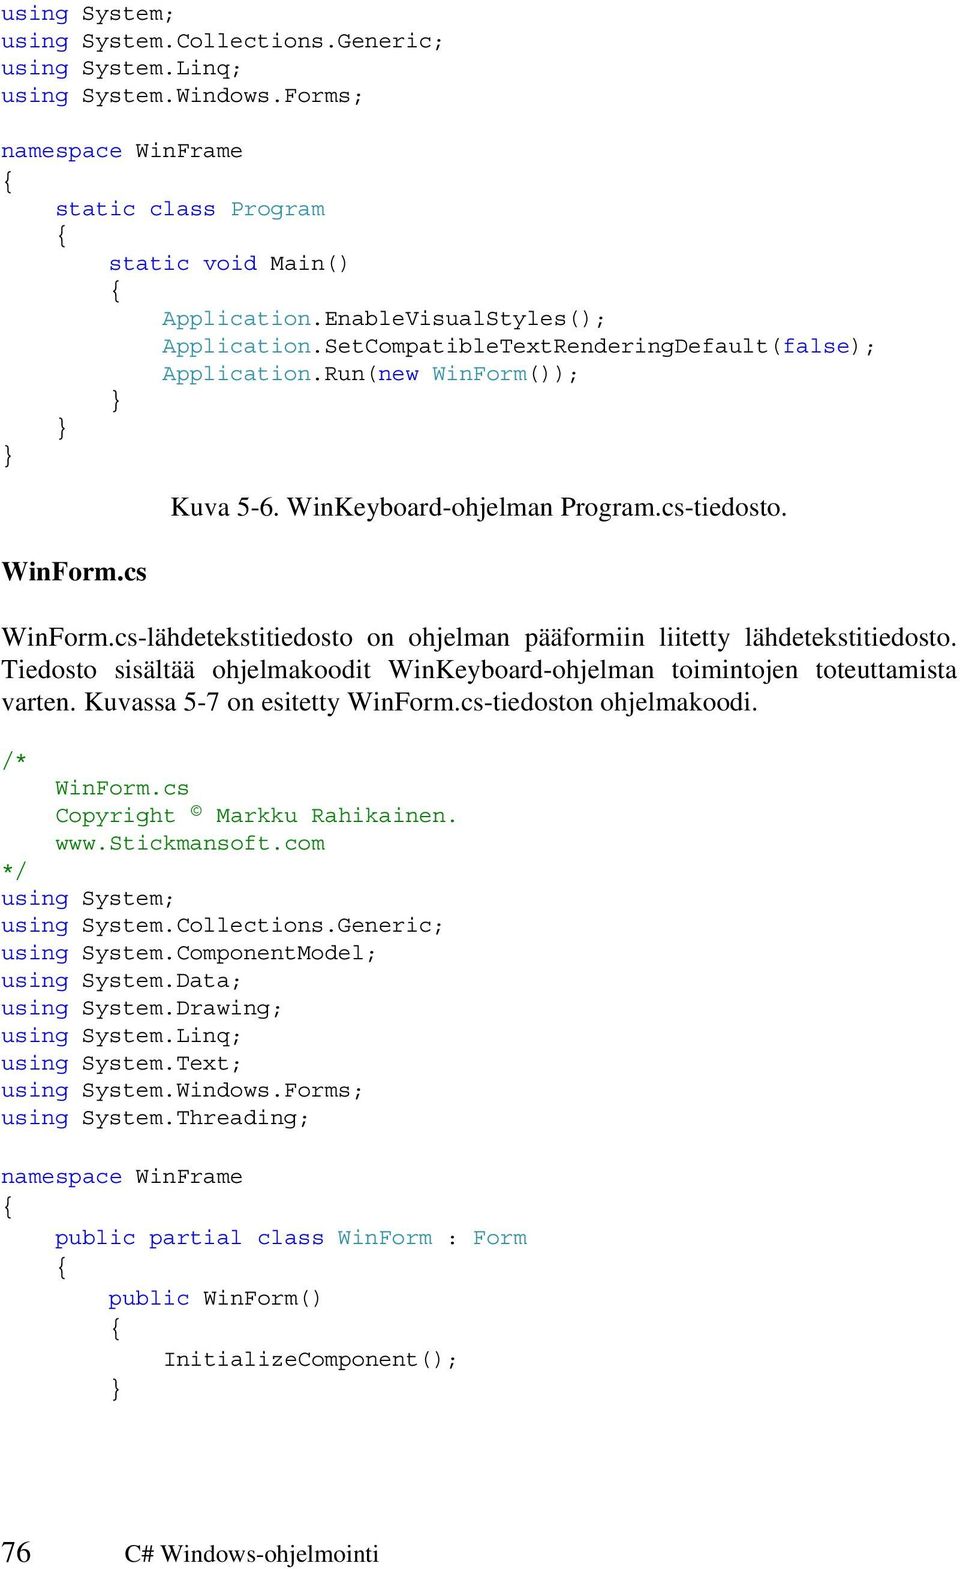 Tiedosto sisältää ohjelmakoodit WinKeyboard-ohjelman toimintojen toteuttamista varten. Kuvassa 5-7 on esitetty WinForm.cs-tiedoston ohjelmakoodi. /* WinForm.cs Copyright Markku Rahikainen. www.